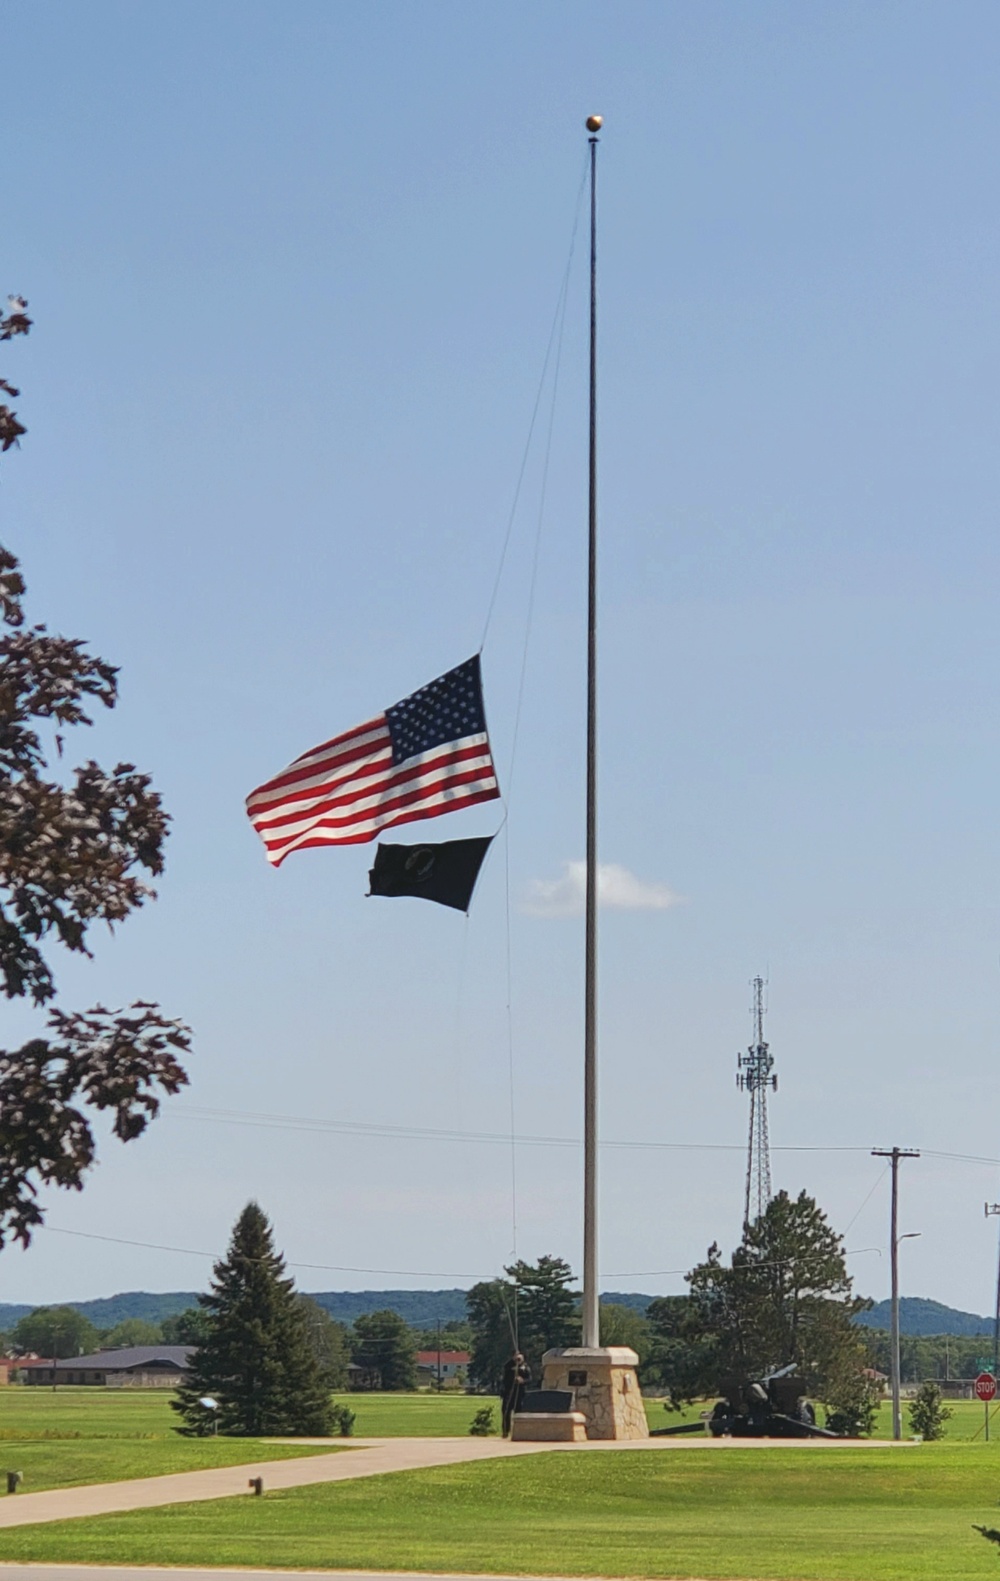 Flag flown at half-staff in honor of former Secretary of Defense Rumsfeld